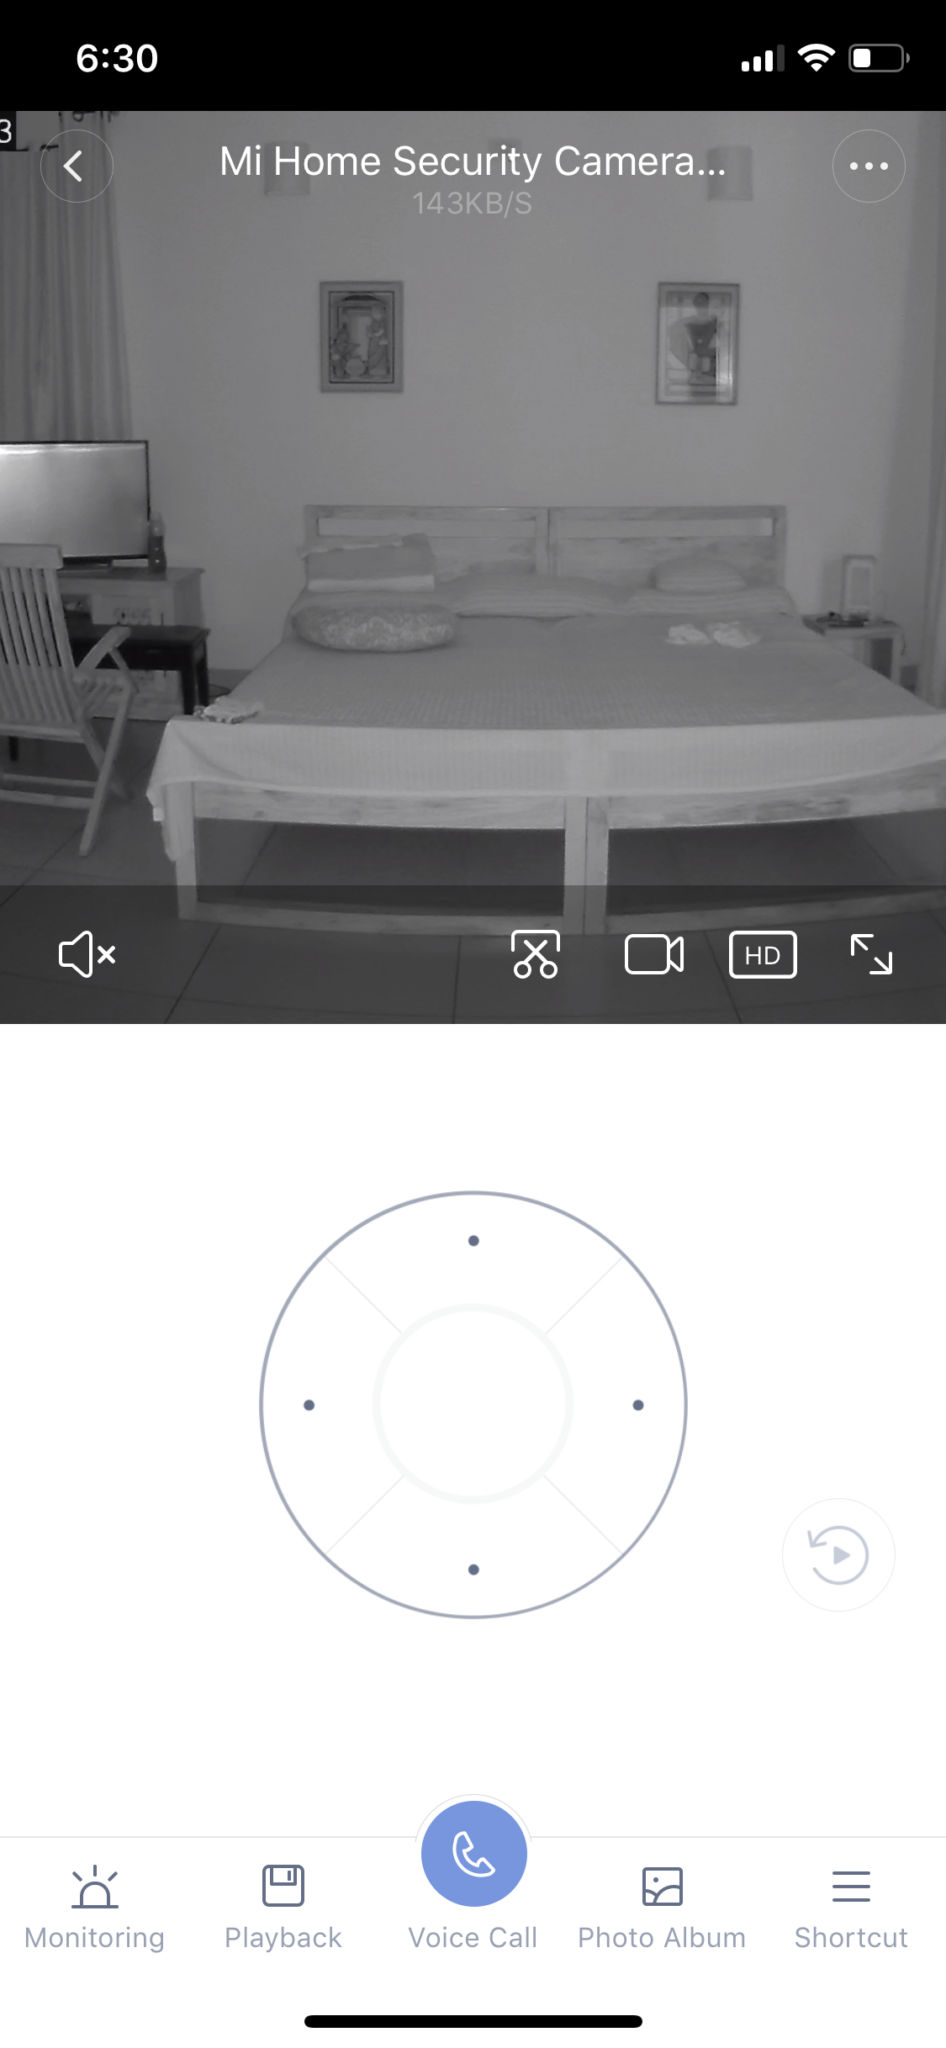 mi home security camera 360 review